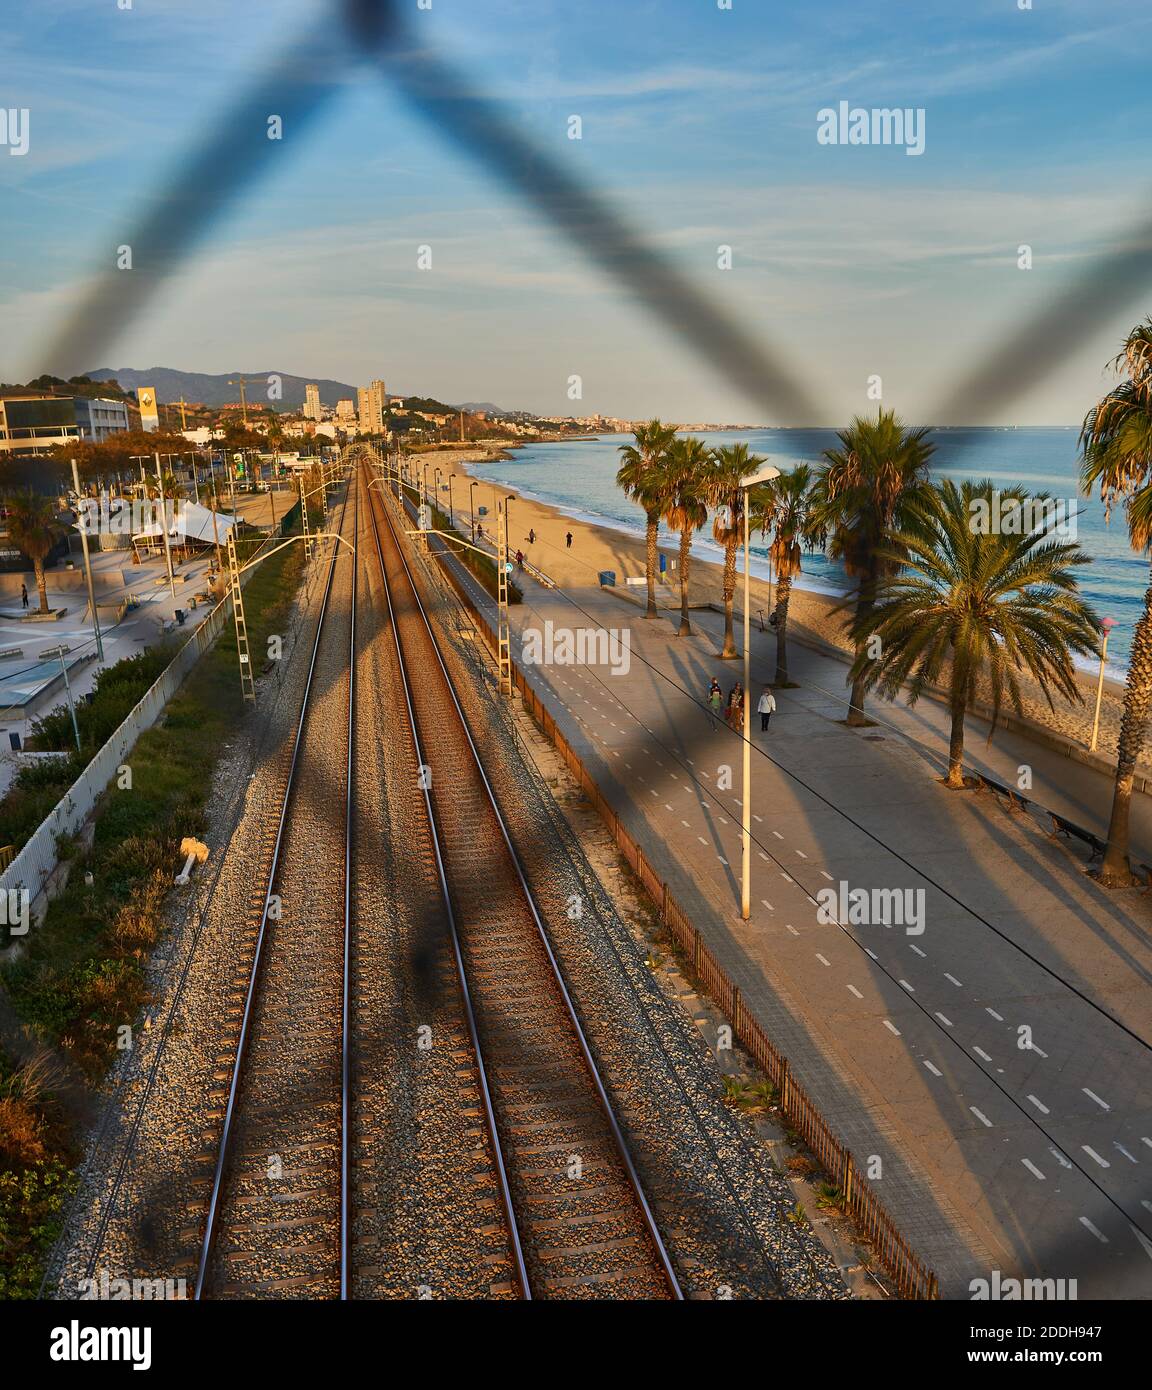 Eisenbahn und Badalona Strand durch das verblassen des Metalls Zaun Stockfoto